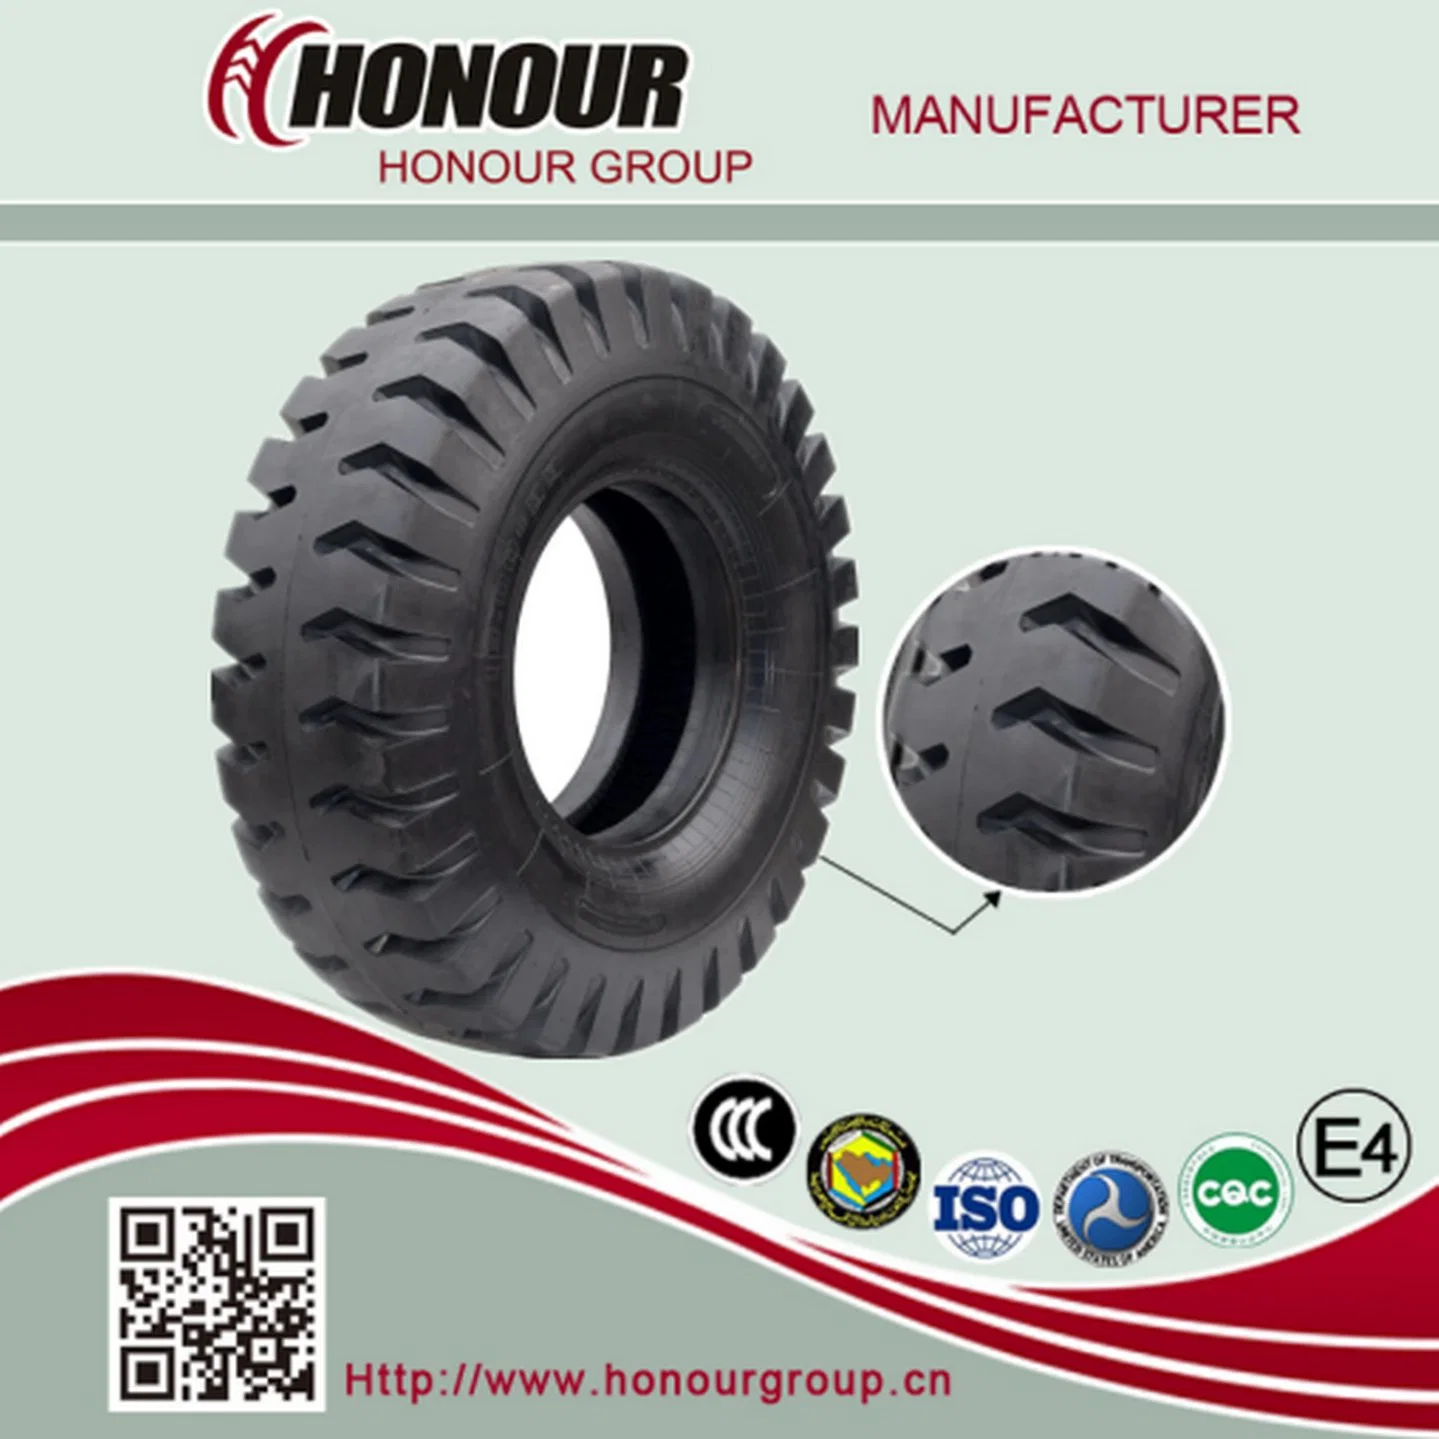 Pneus Bias E4 gigantes honram pneus OTR de pneu de Porto de alta qualidade para pá Carregadora de pás Carregadoras de Dozer Dump Truck Tire (2100-25, 1400-24)